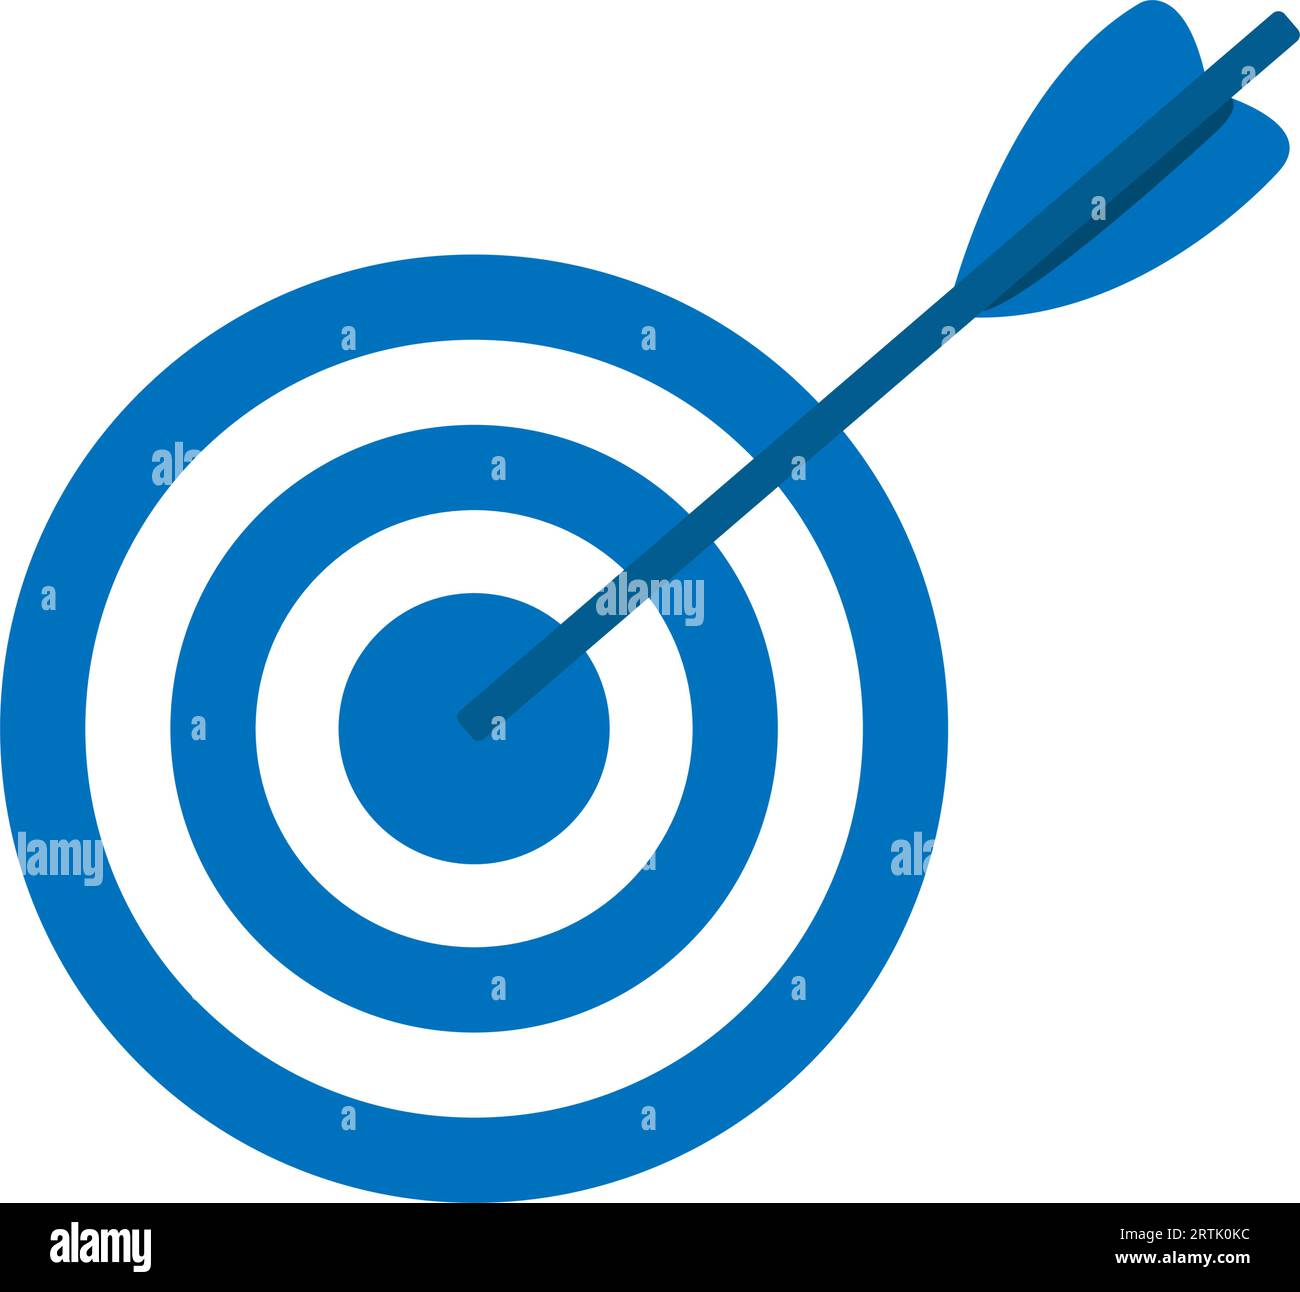 Zielsymbol. Ziel-Symbol für Bullseye. Zieltafel mit Pfeilen. Bogenschießen Sportspiel Arrow trifft Ziel. Ziel erreicht und Misserfolg herausgefordert Schuss verfehlt Kontra Stock Vektor